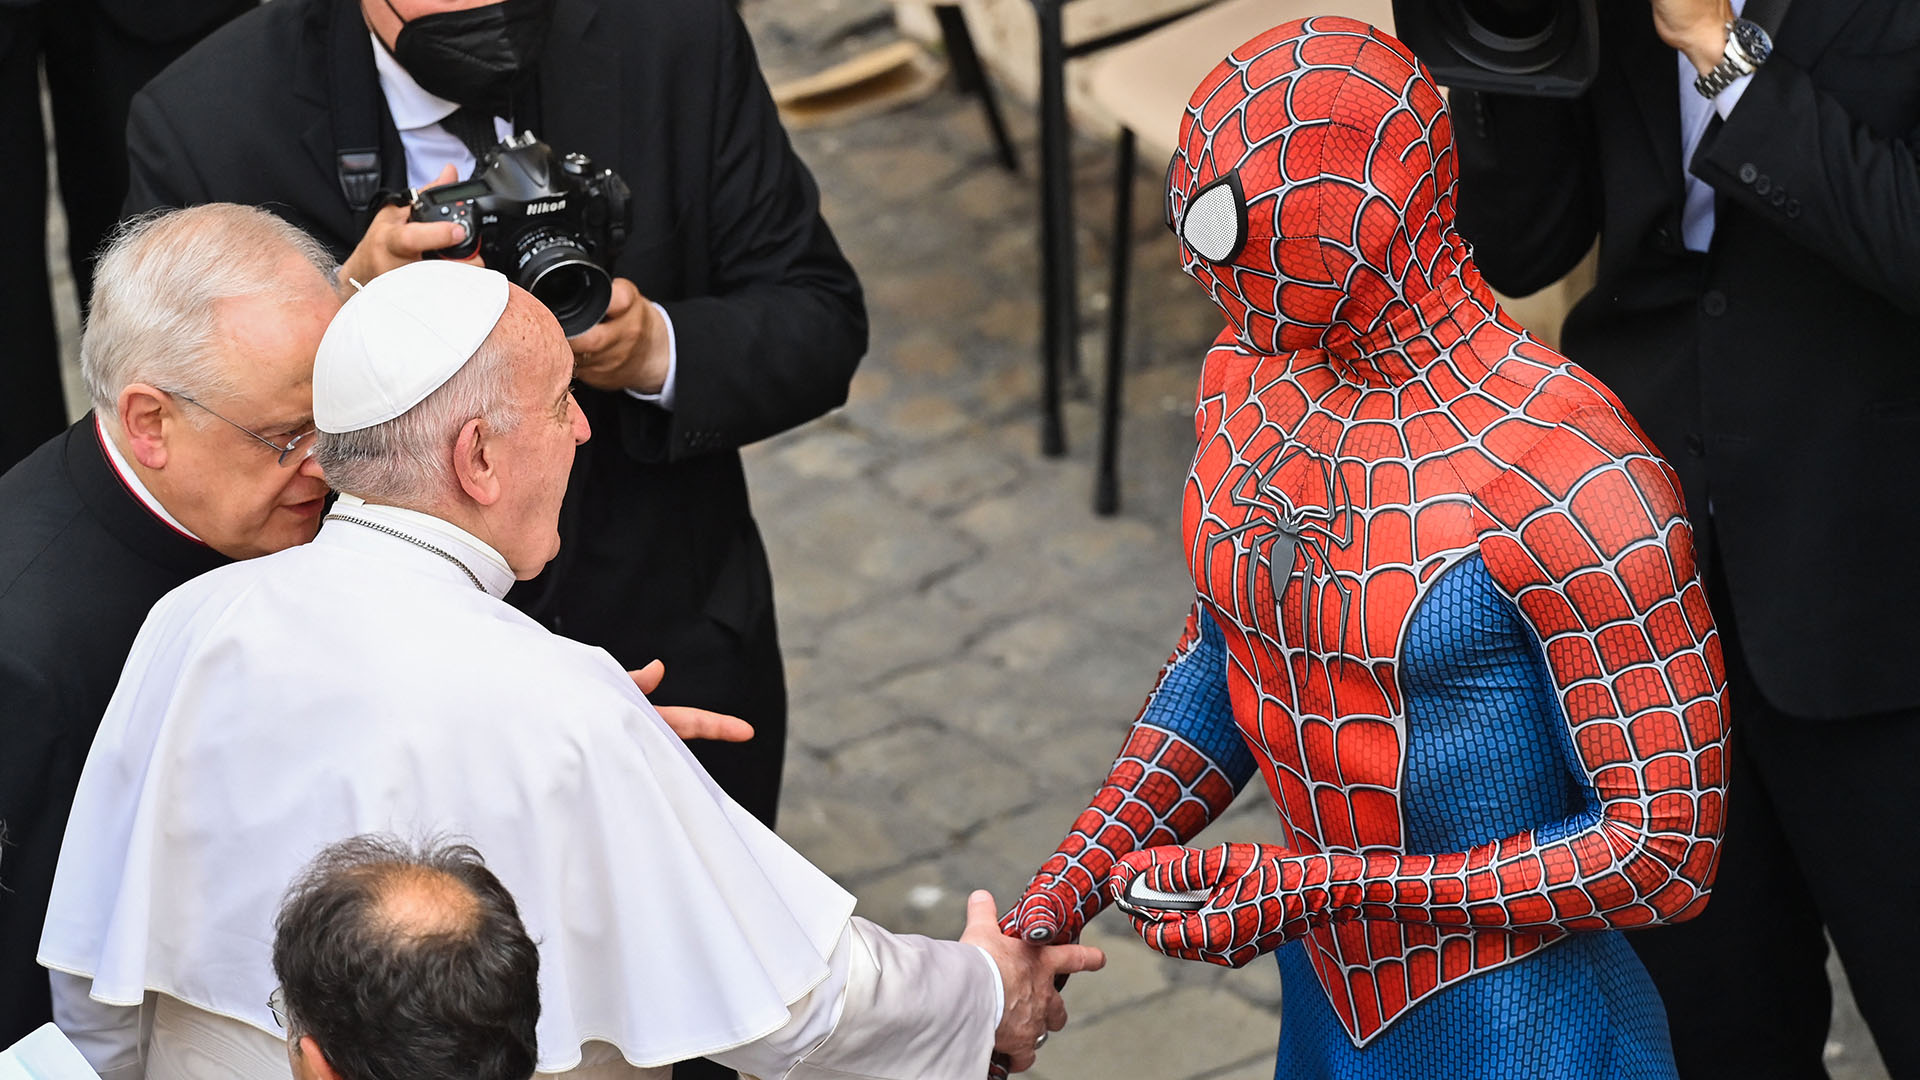 El papa Francisco recibió la visita inesperada de Spiderman - Infobae